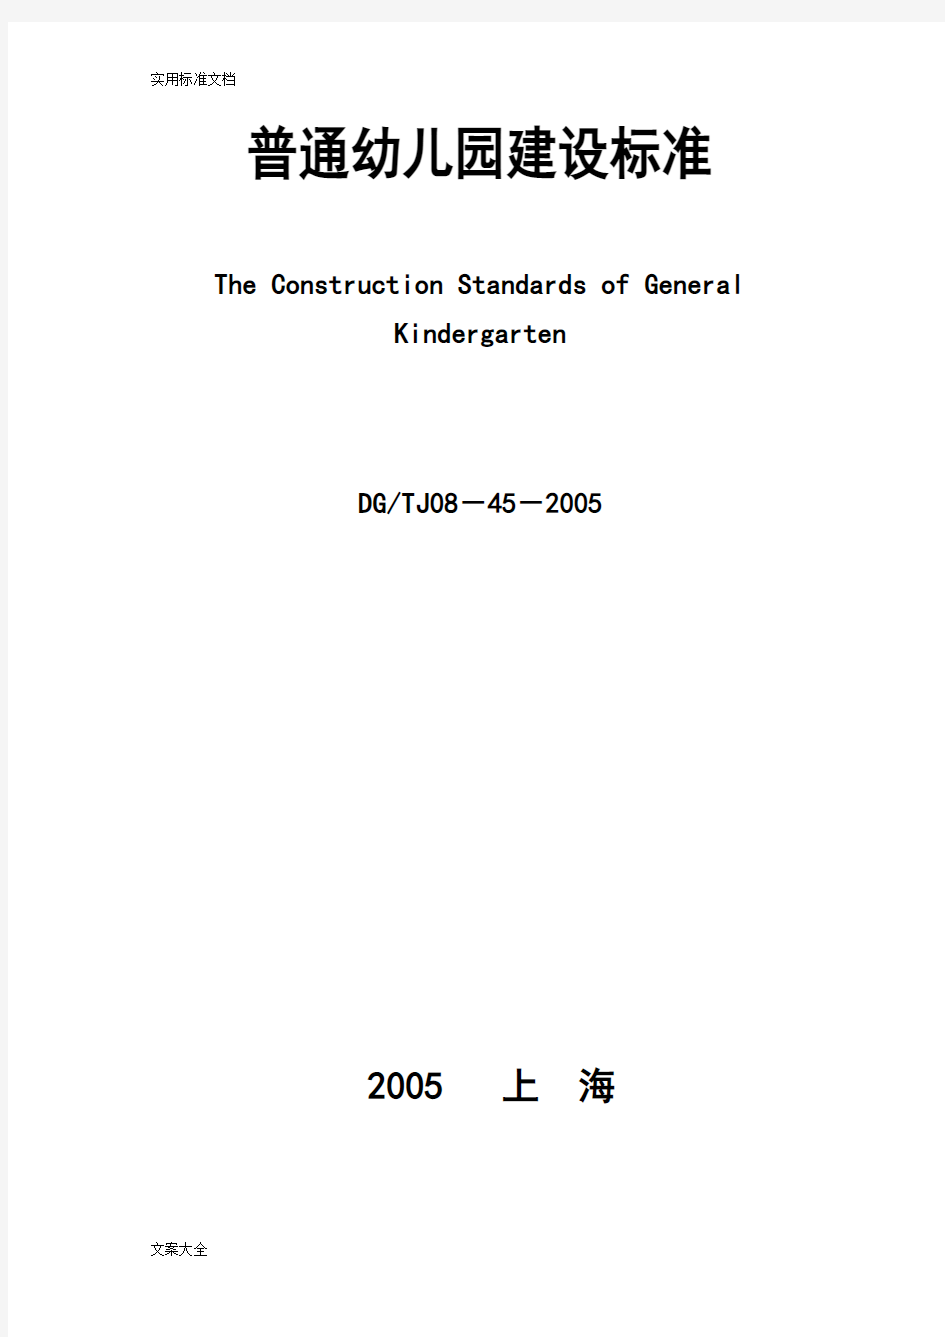 上海市《普通幼儿园教育建设实用标准》(DG／TJ08-45-2005)